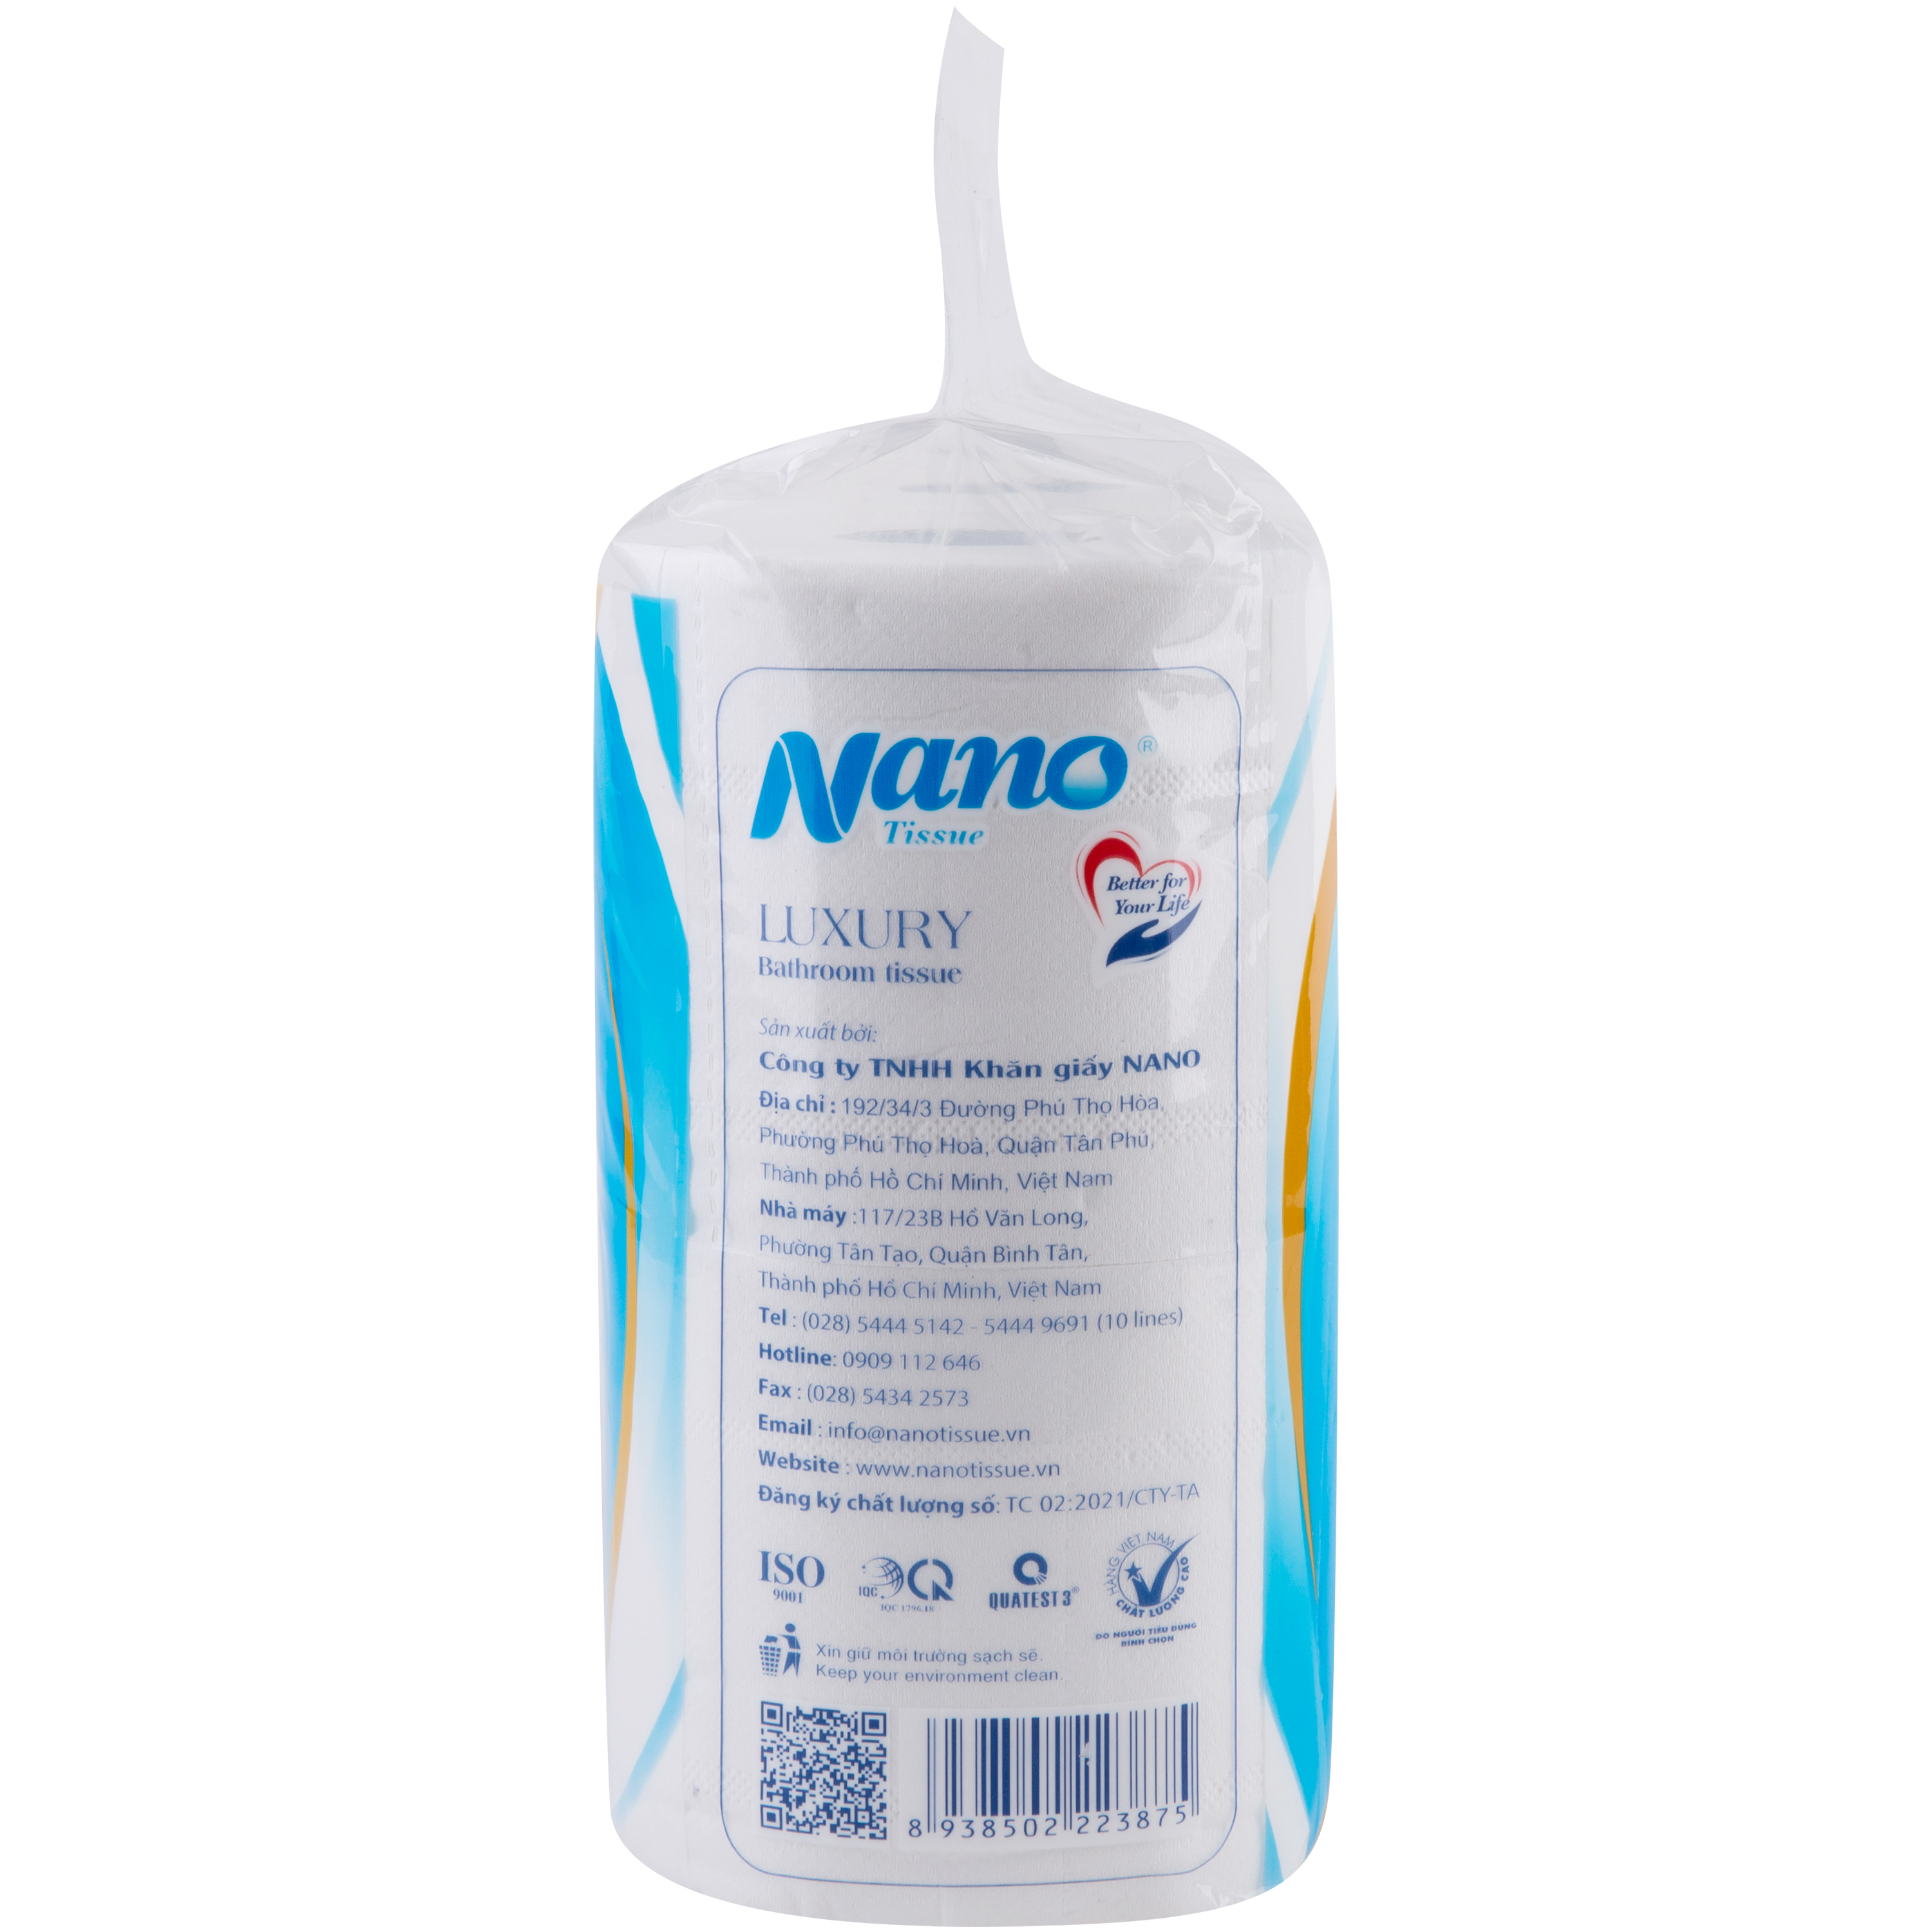 Giấy vệ sinh Nano 6 cuộn có lõi, giấy 3 lớp dày dặn tiết kiệm